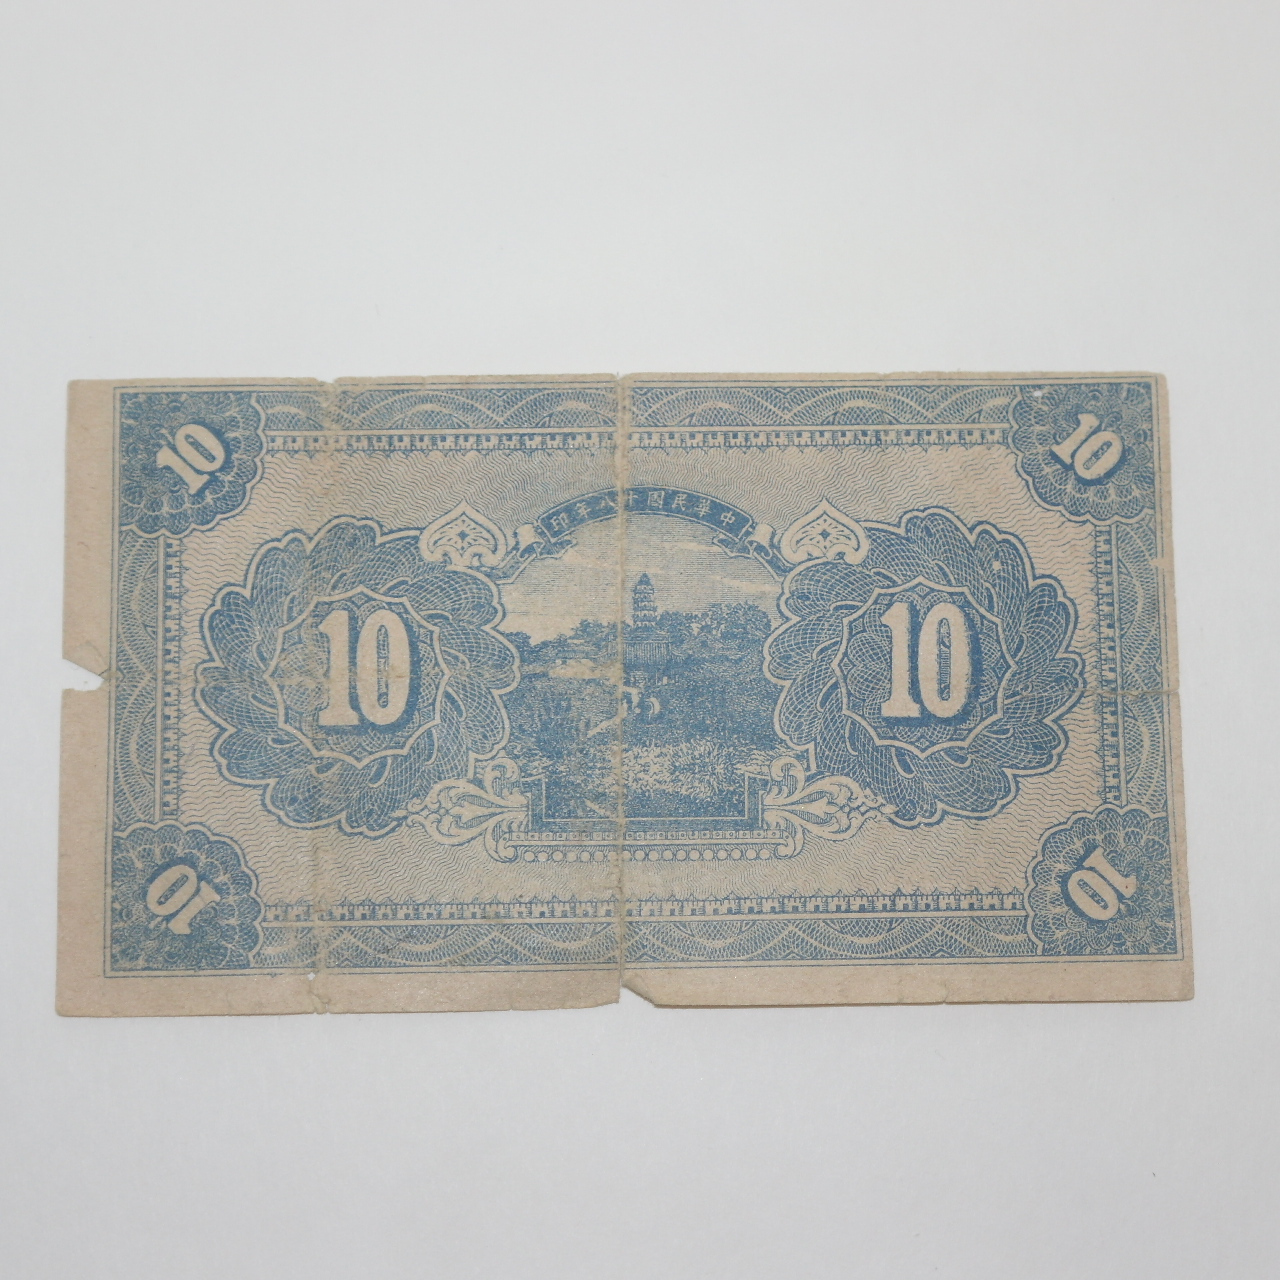 1929년(중화민국18년) 십원 지폐